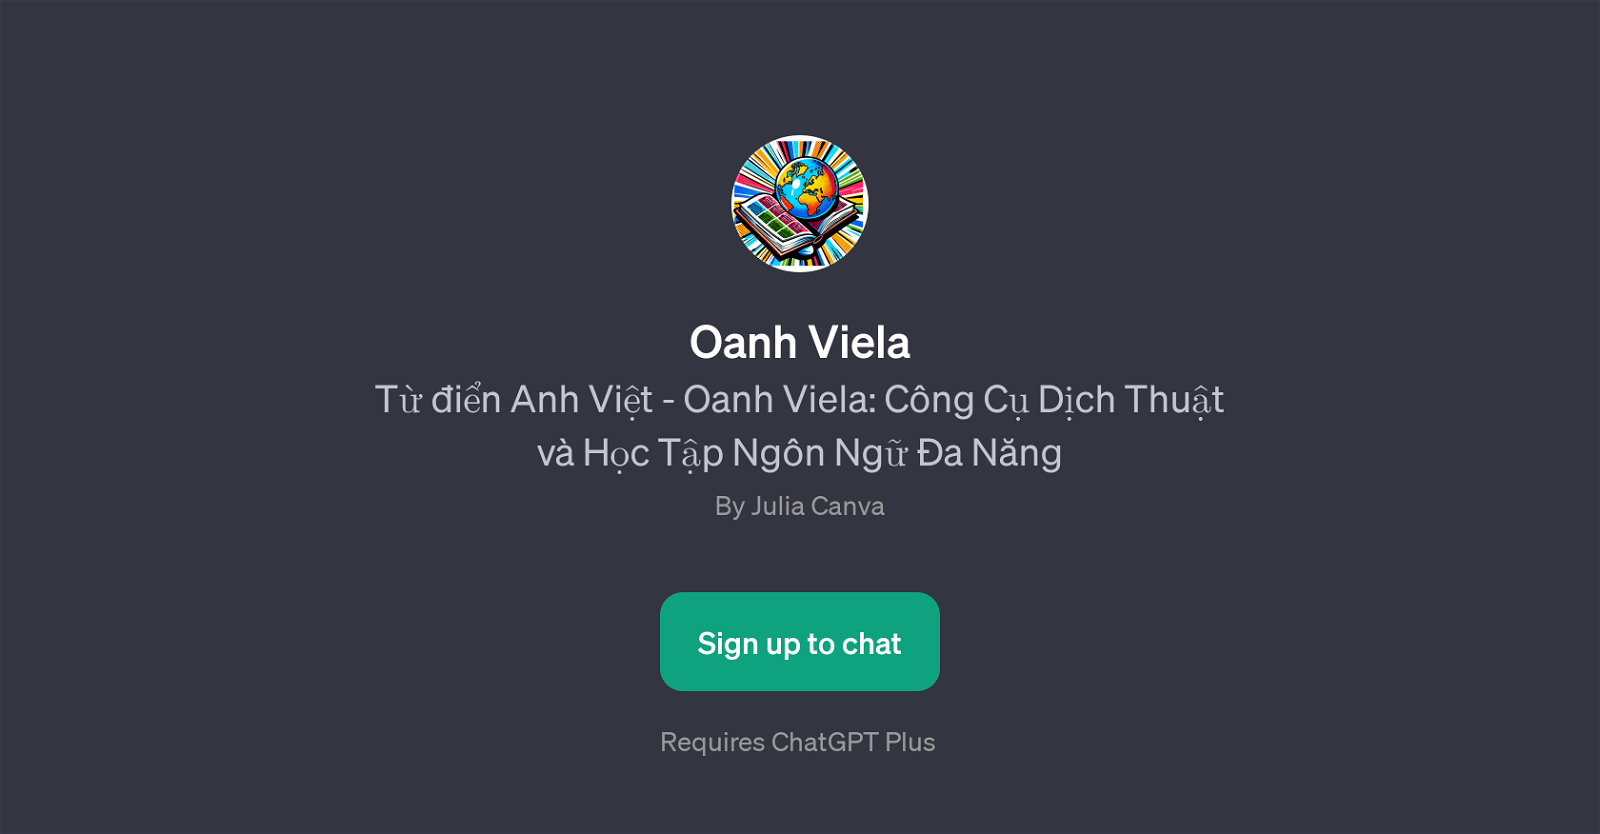 Oanh Viela website